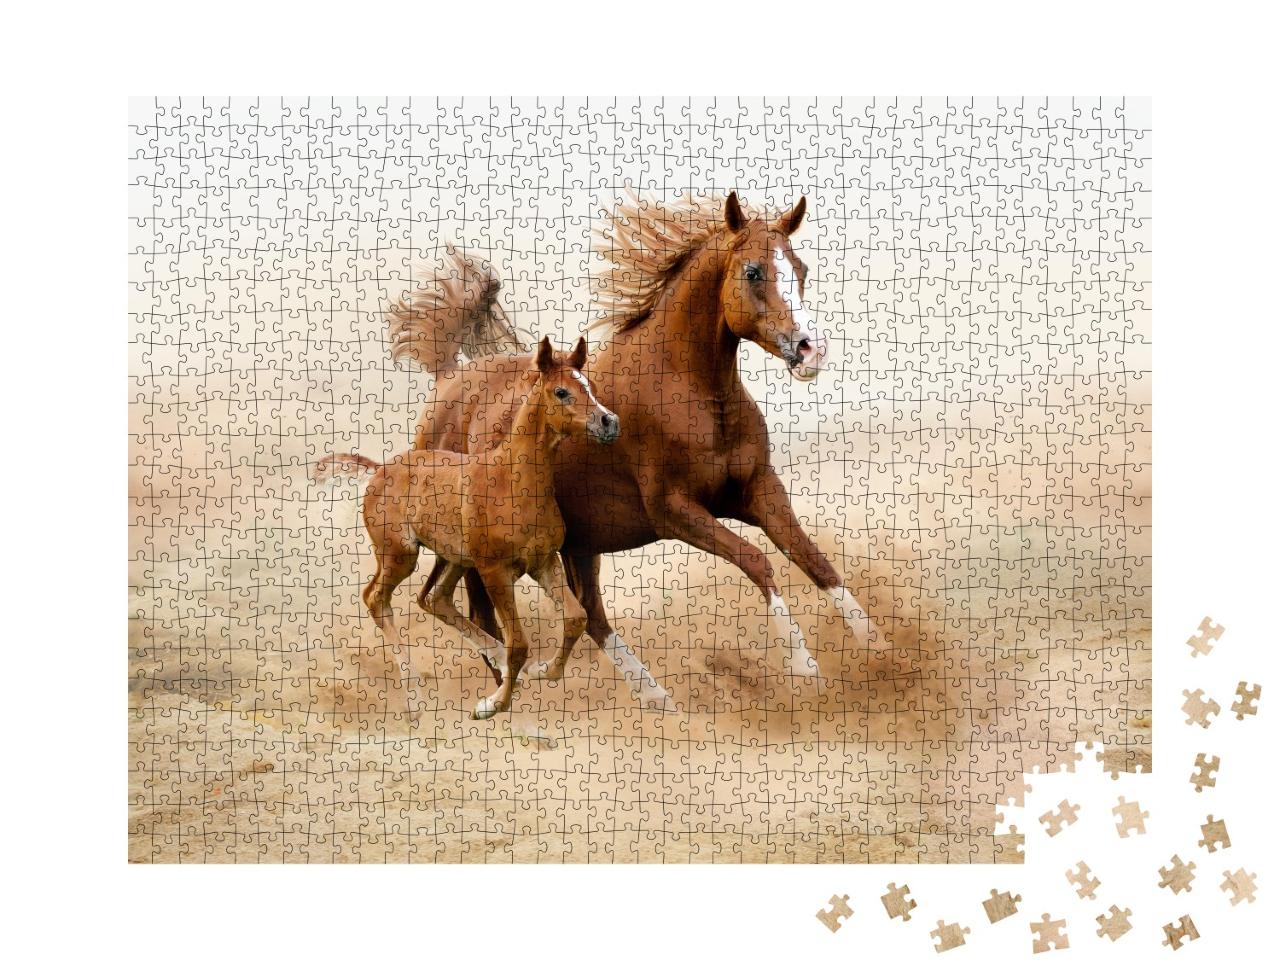 Puzzle de 1000 pièces « Cheval arabe de pure race »